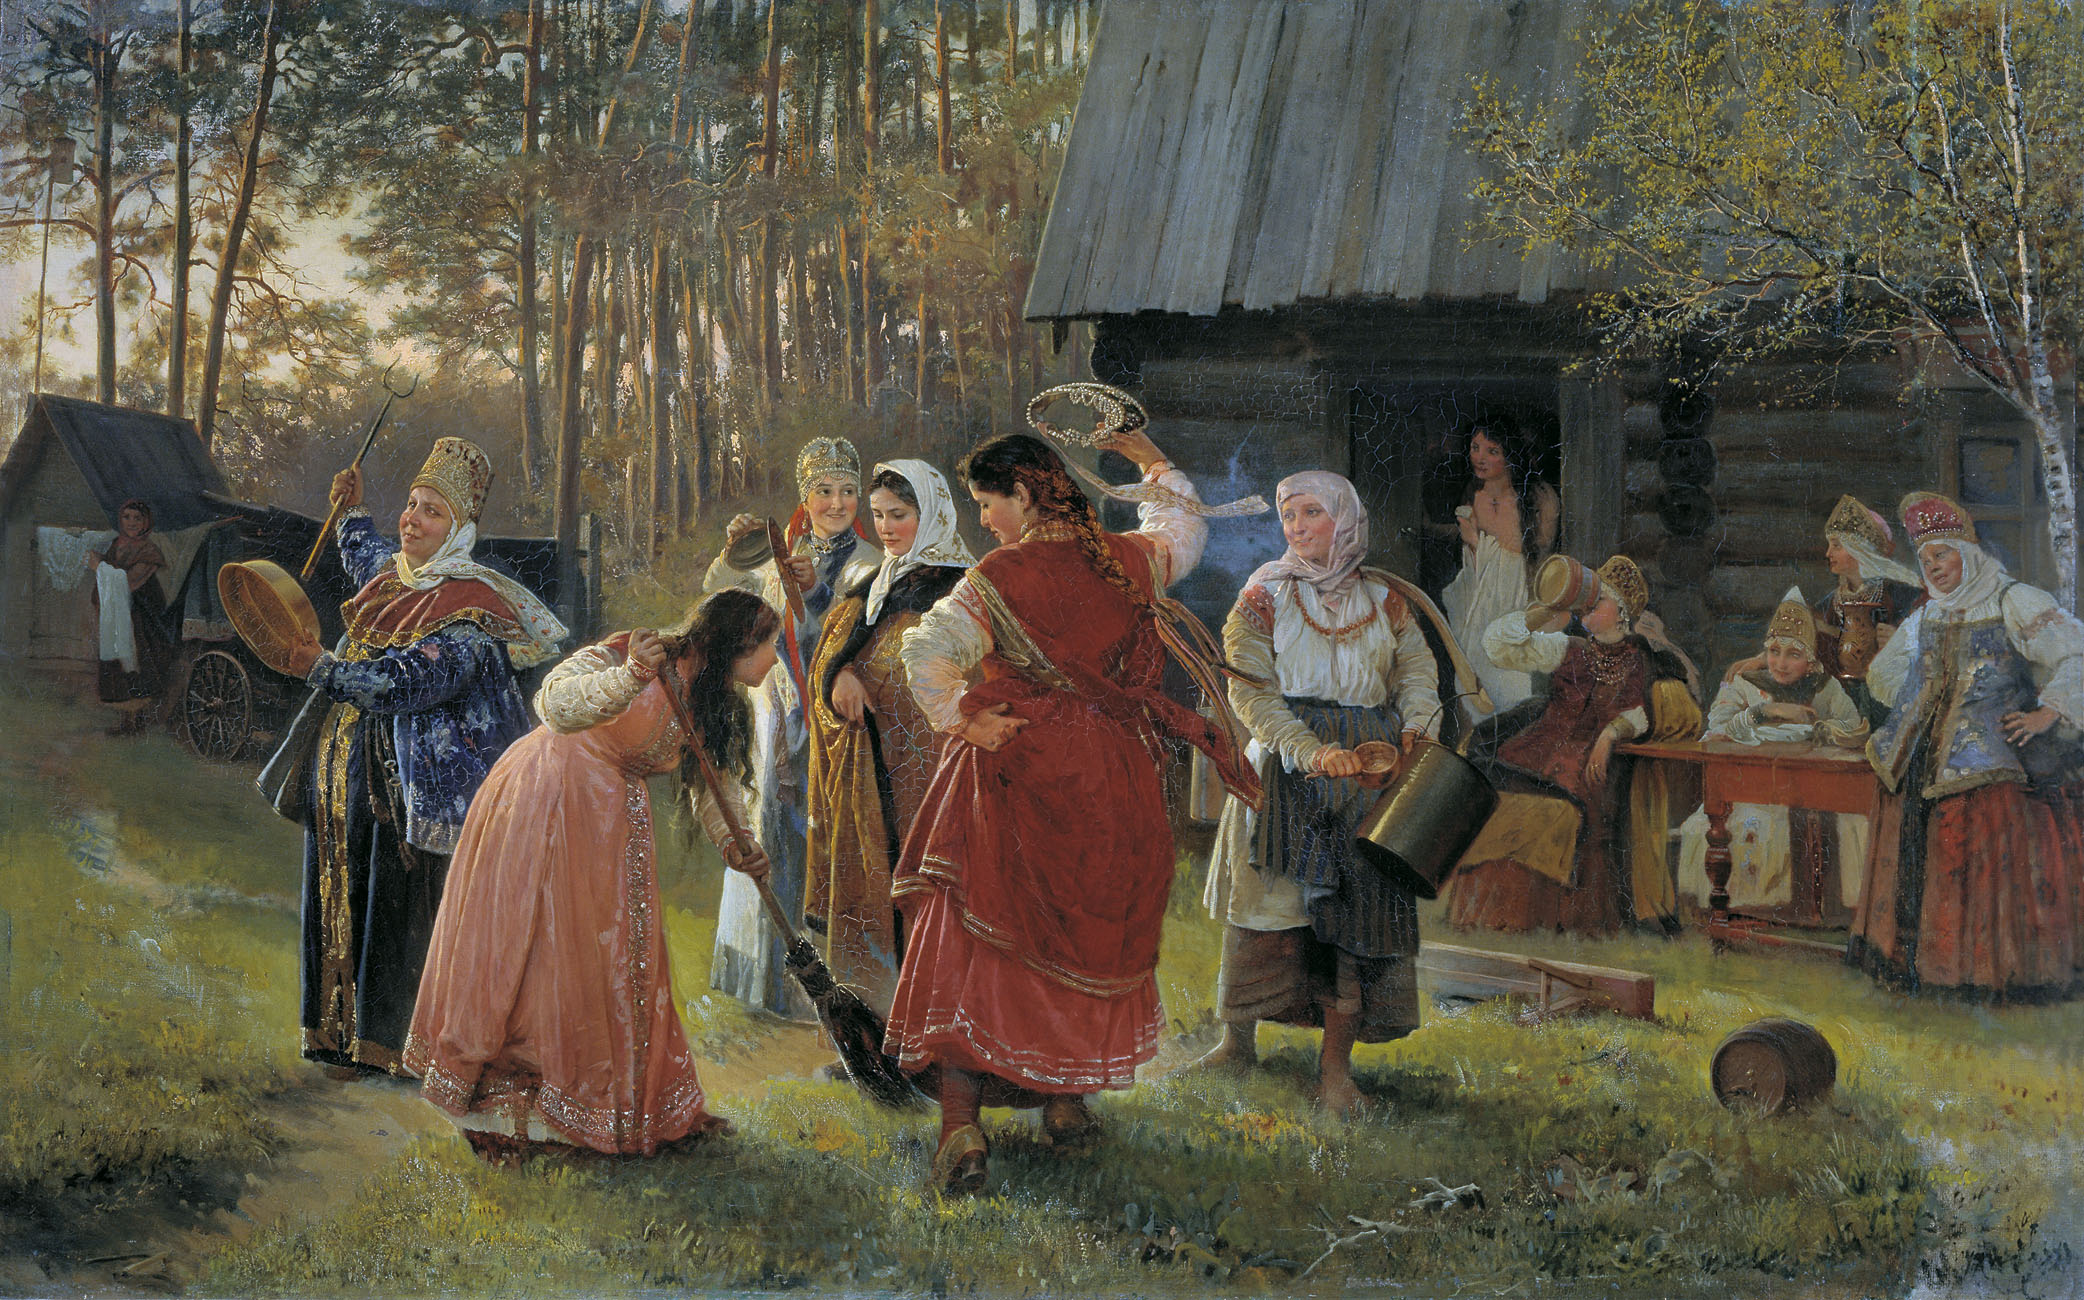 Реферат: Свадебные традиции башкир, татар, народов севера